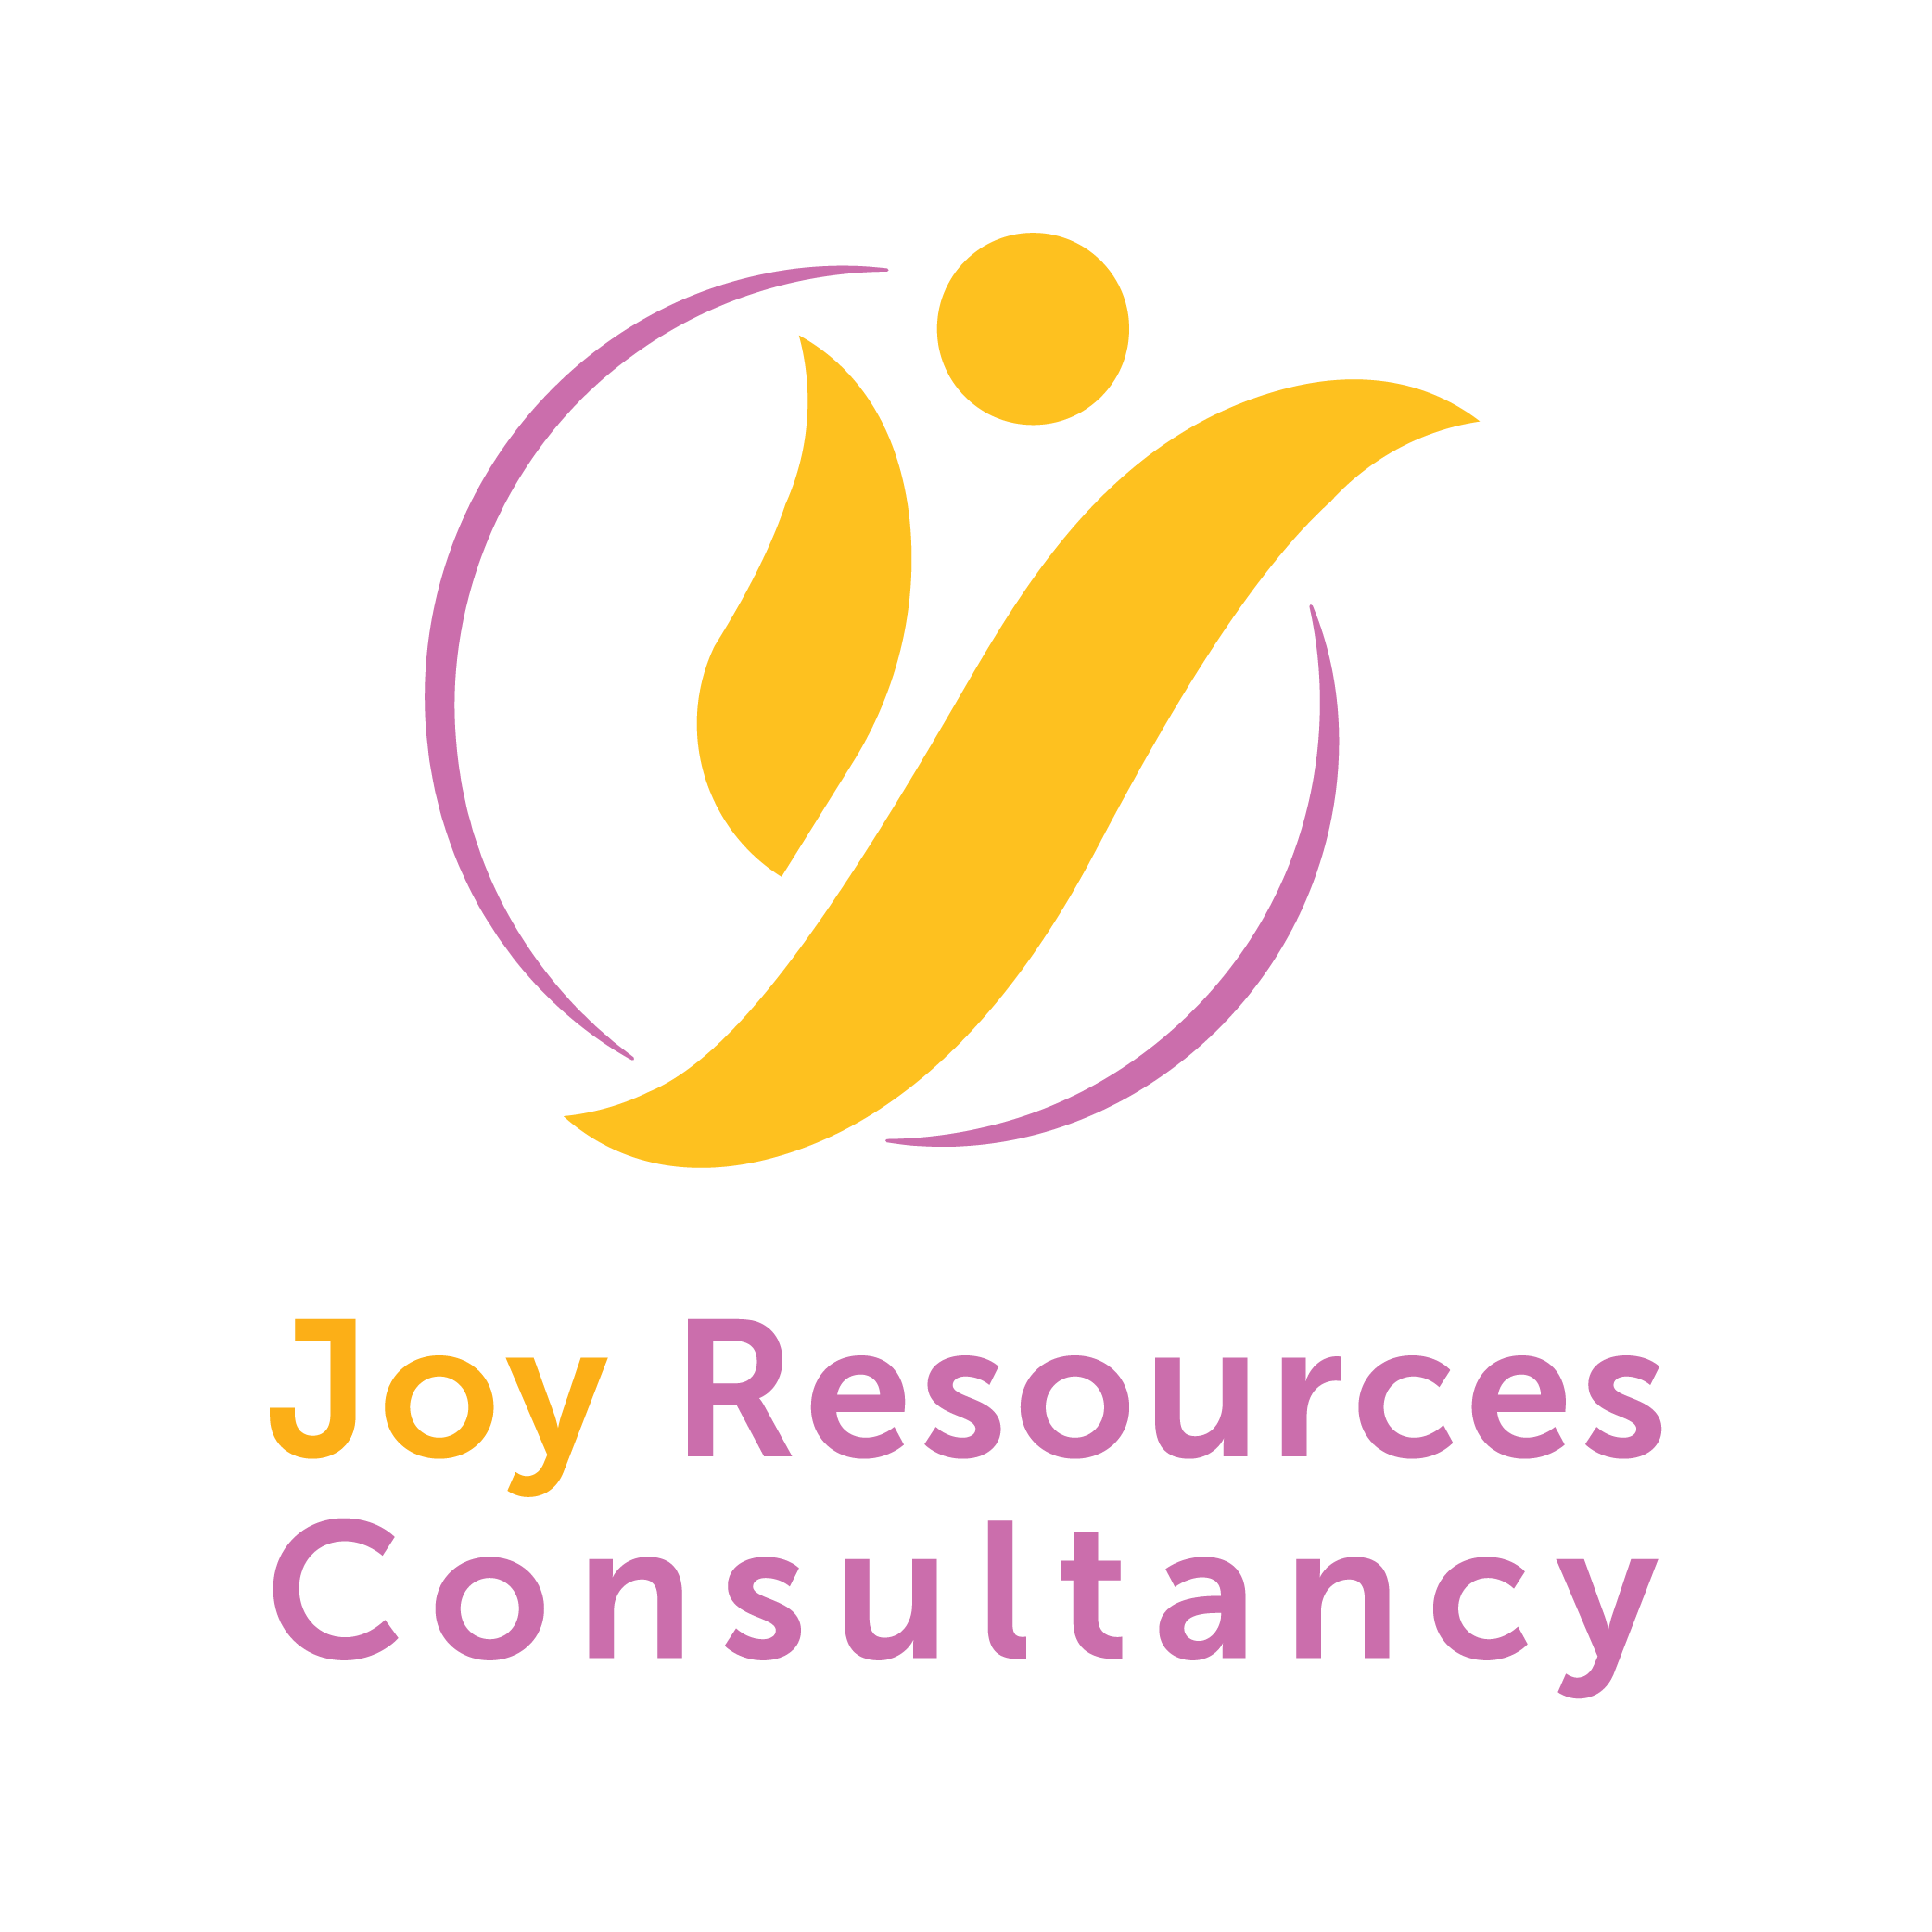 Joy Resources Consultancy logo